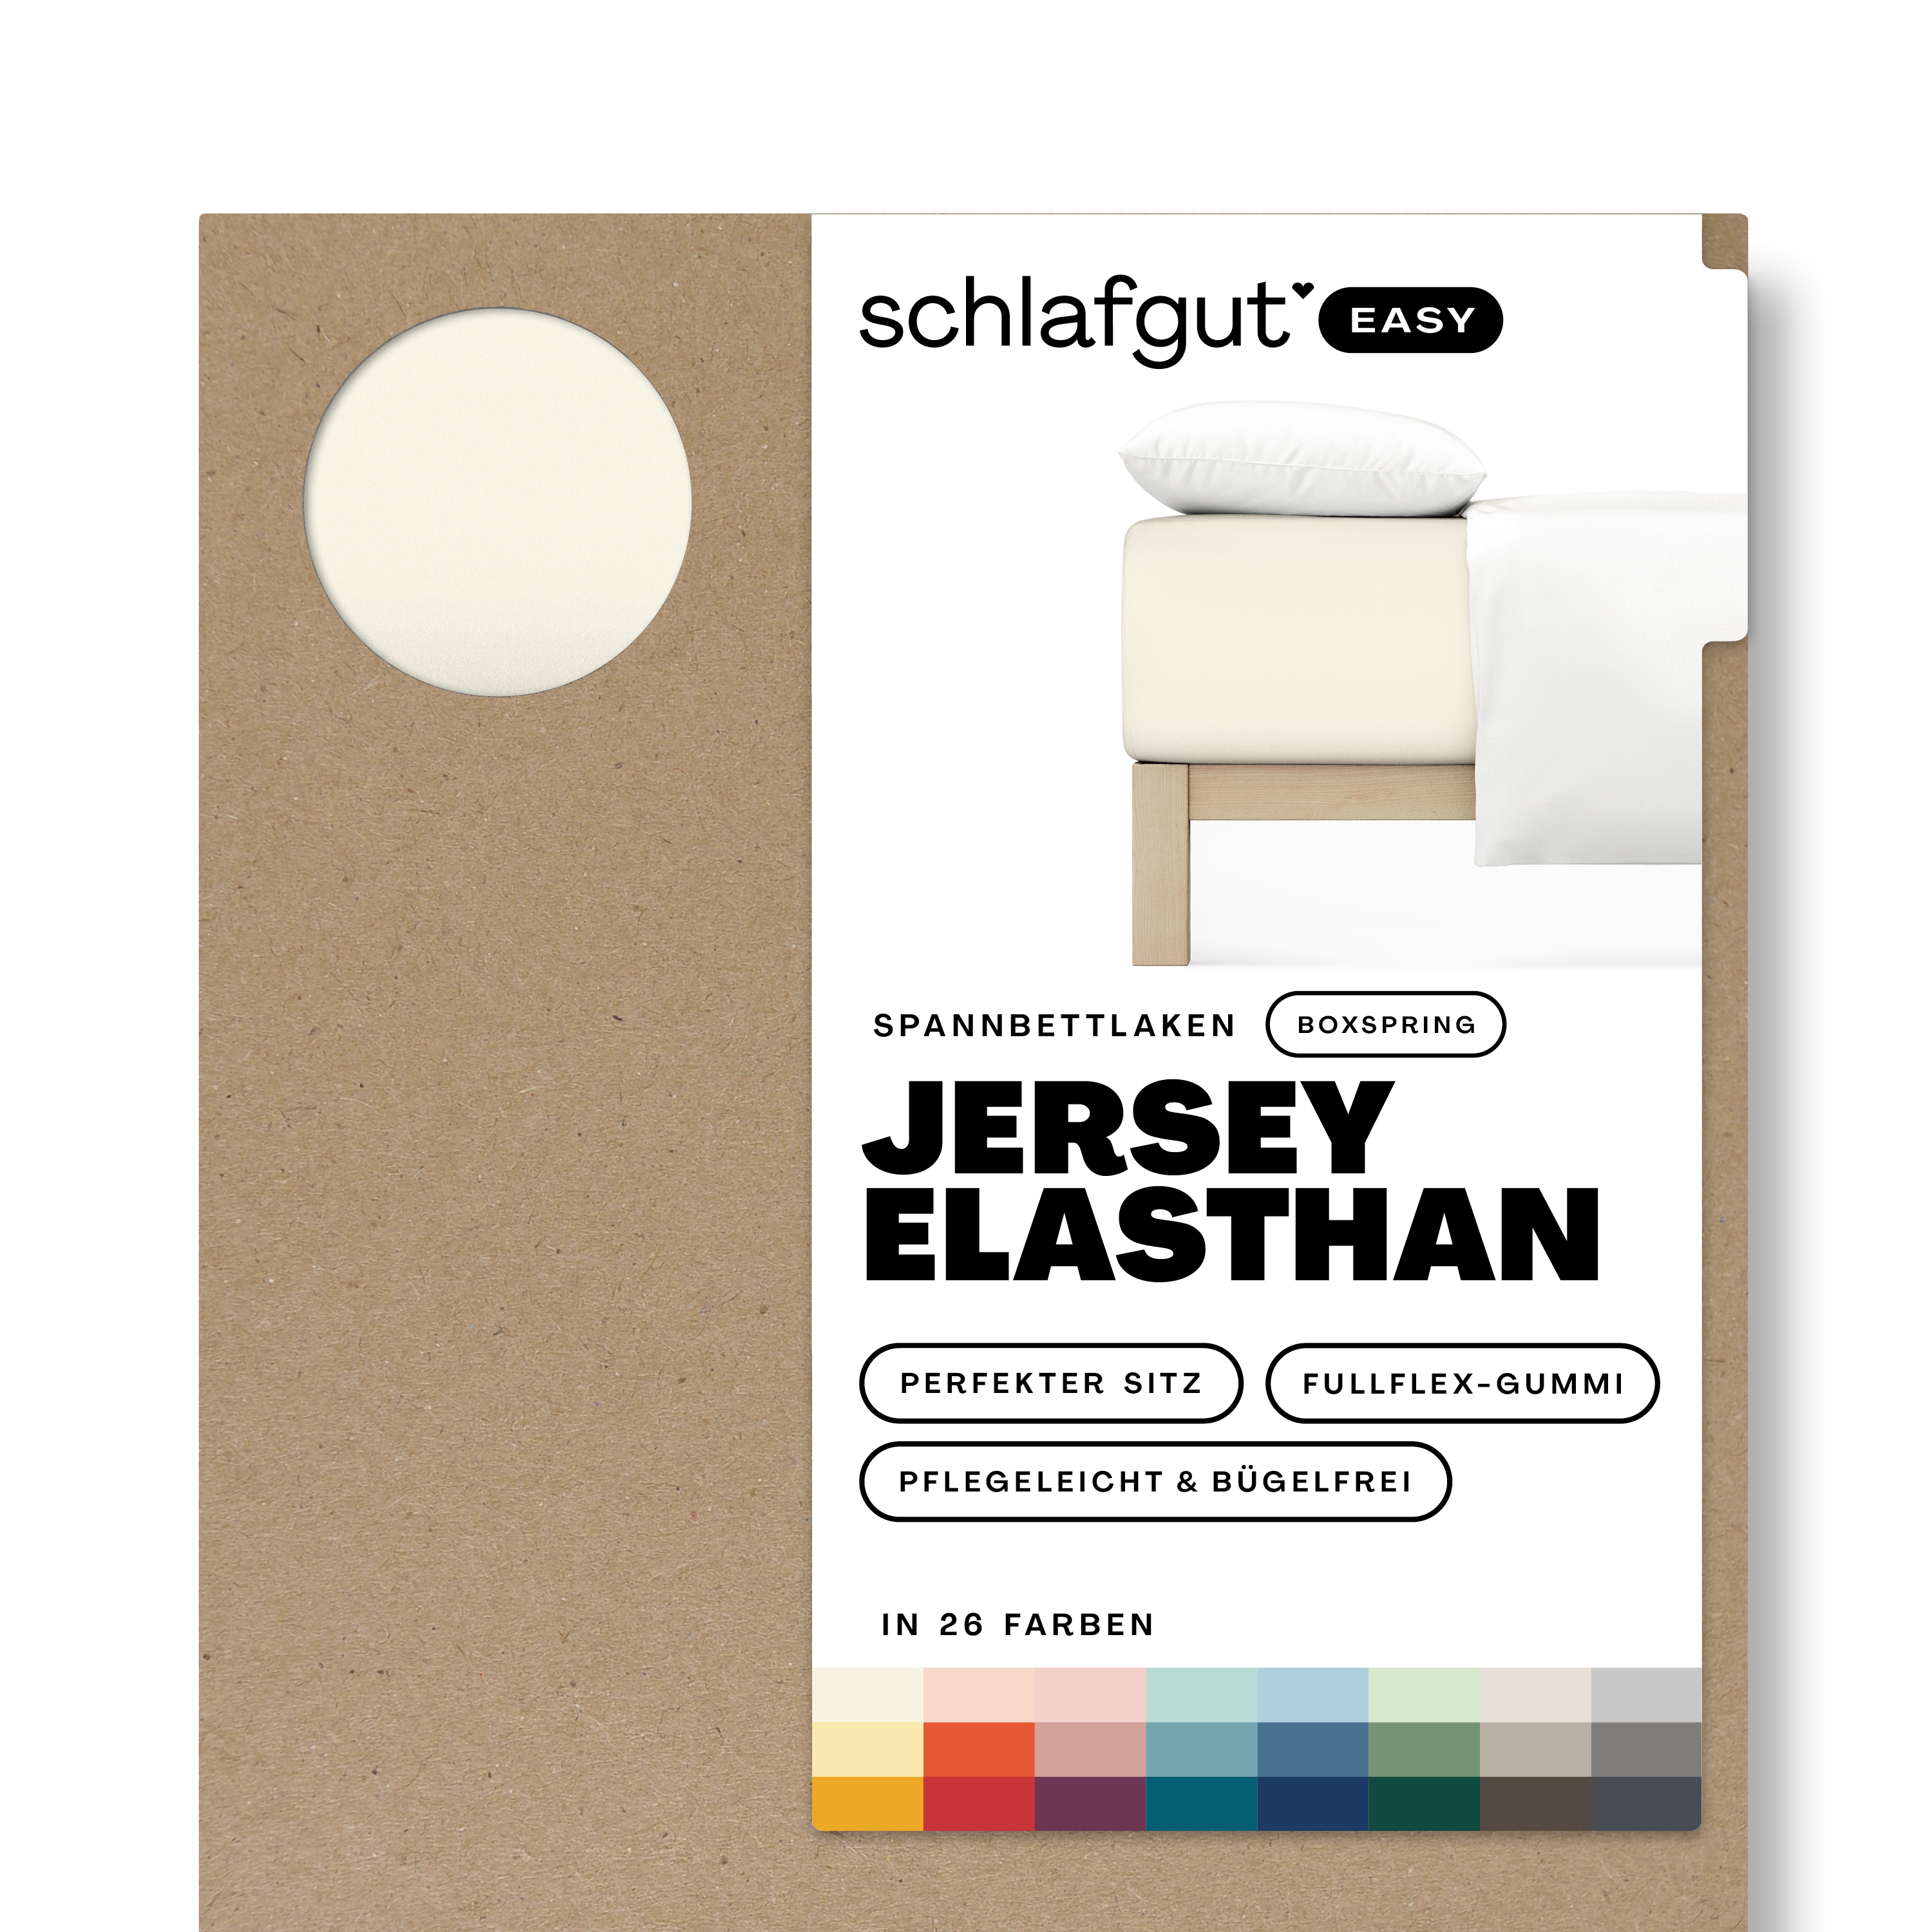 Das Produktbild vom Spannbettlaken der Reihe Easy Elasthan Boxspring in Farbe yellow light von Schlafgut